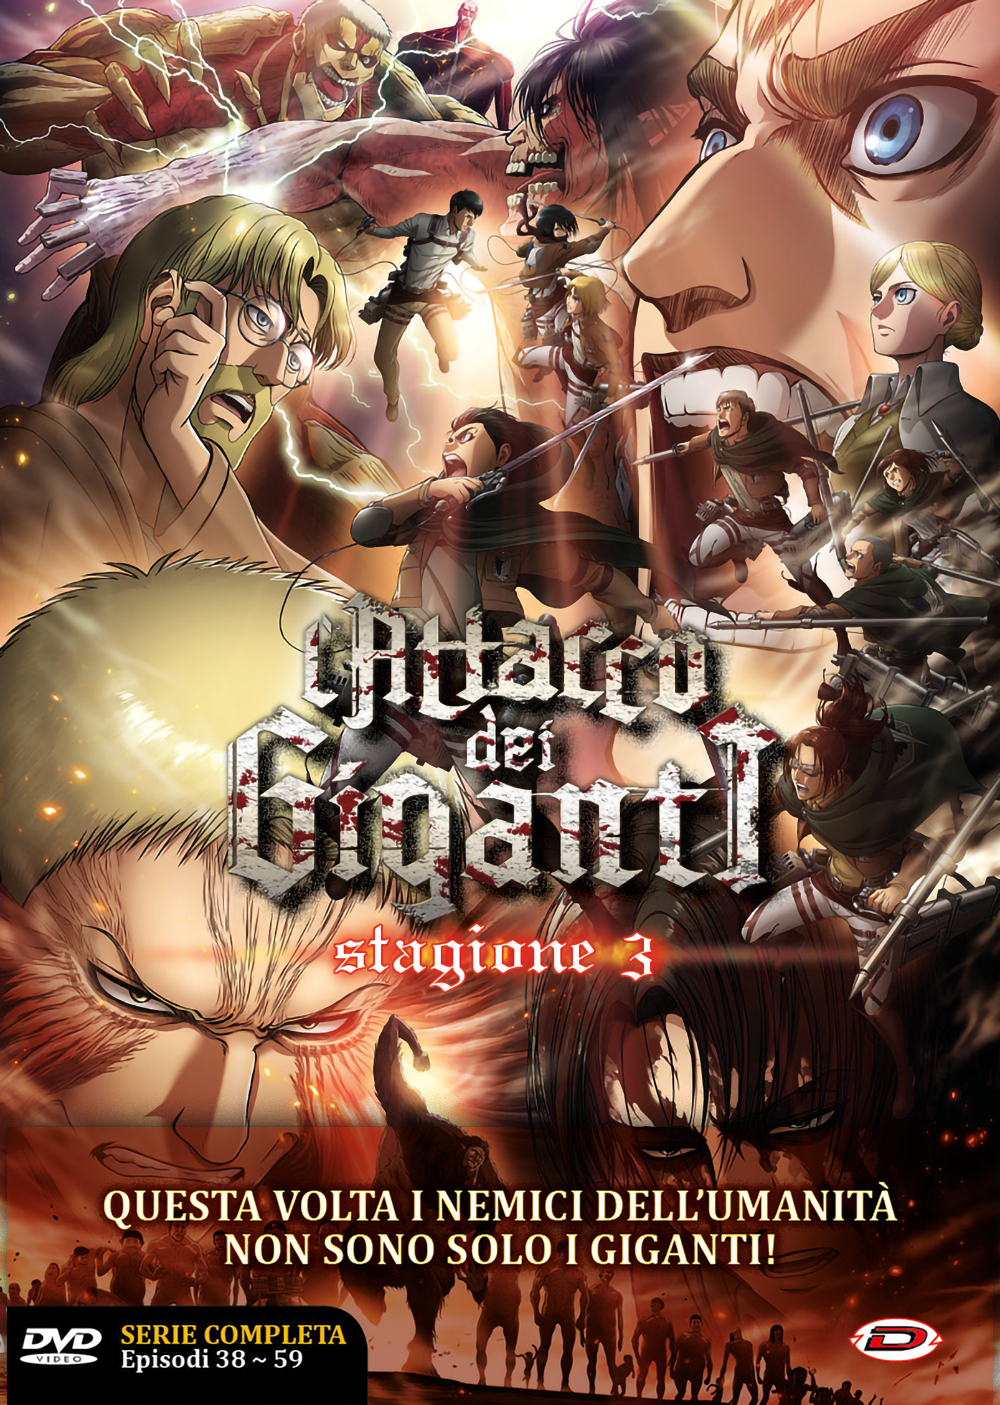 Dvd Attacco Dei Giganti L - Stagione 03 The Complete Series 4 Dvd Eps 01-22 NUOVO SIGILLATO EDIZIONE DEL SUBITO DISPONIBILE